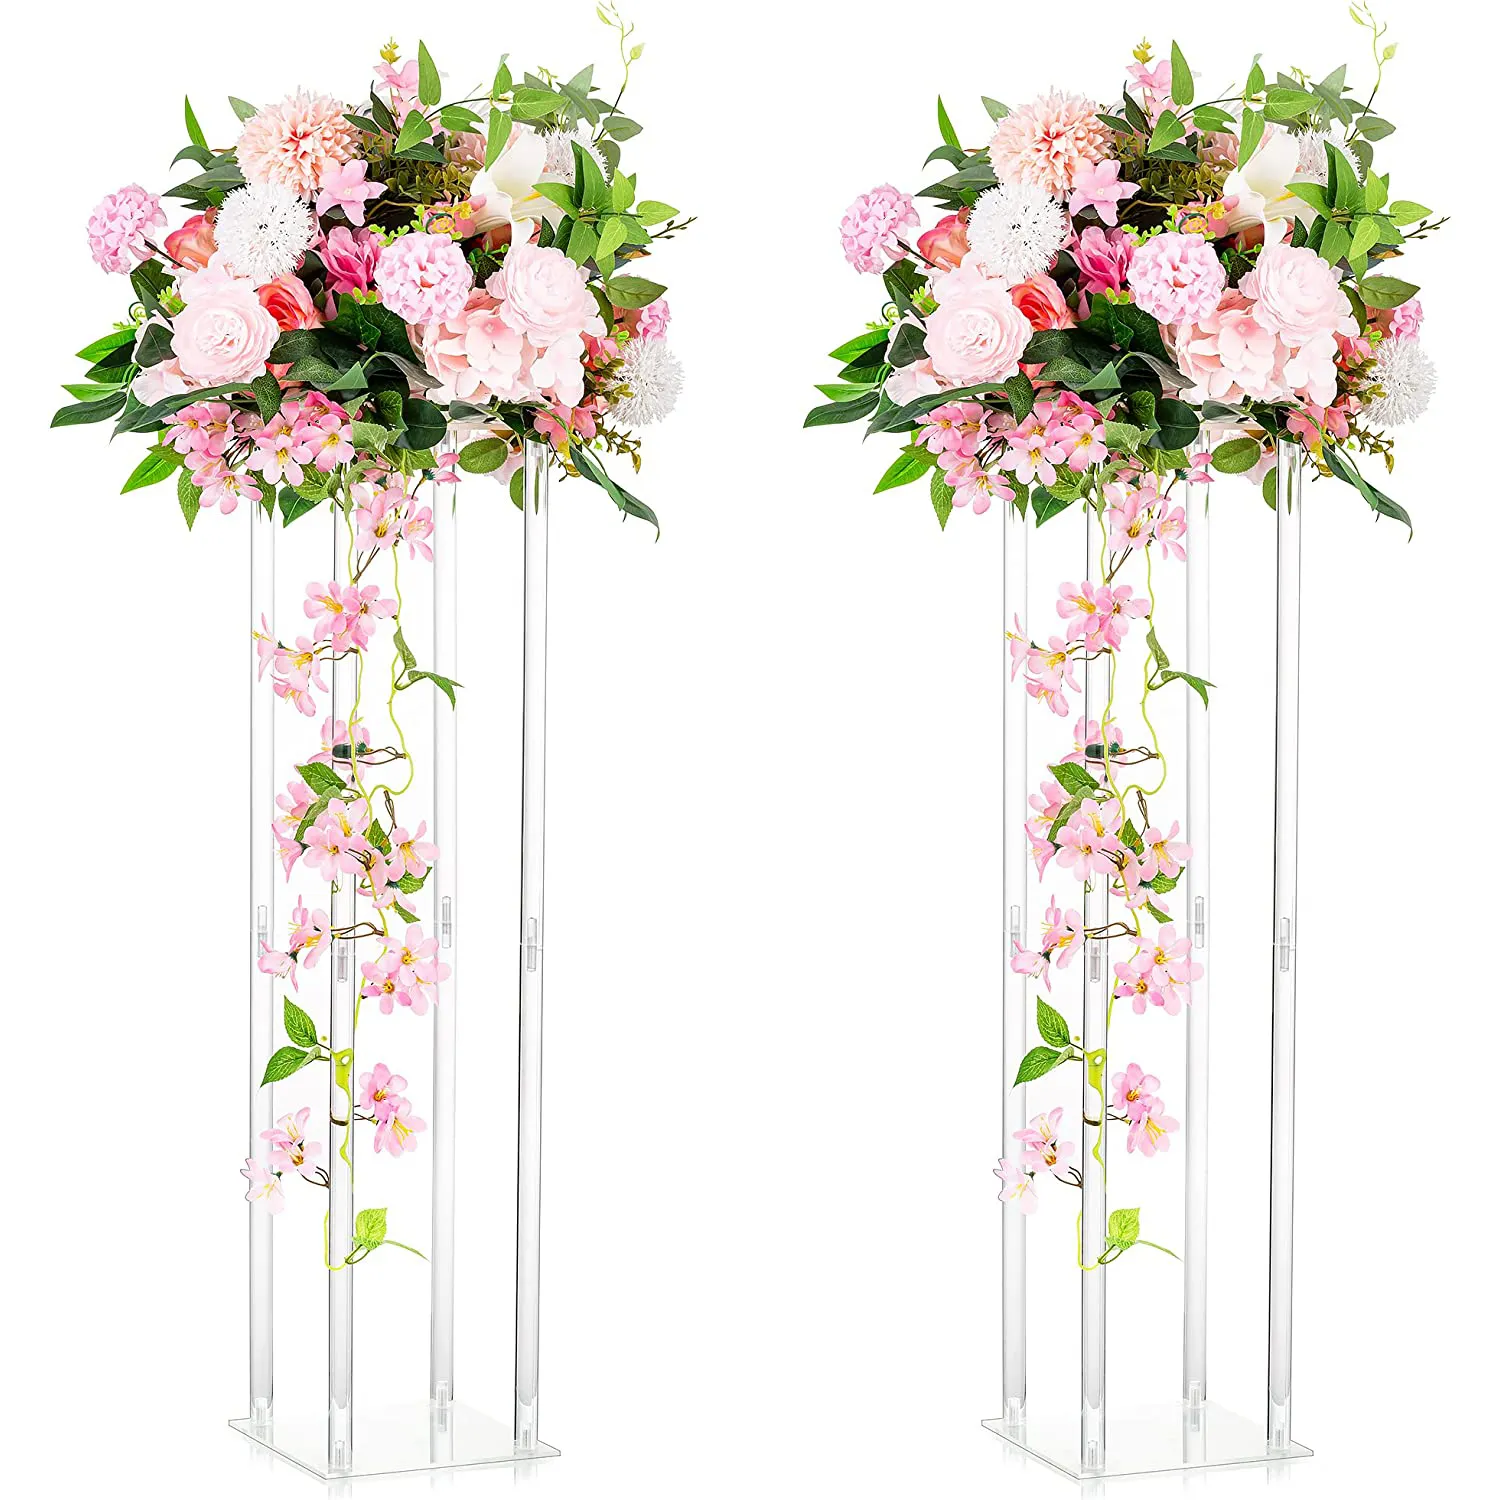 Crystal Acrílico Flower Stand Decoração Do Casamento Tabela Principal Ornamentos De Casamento Acrílico Centerpiece Flower Stand